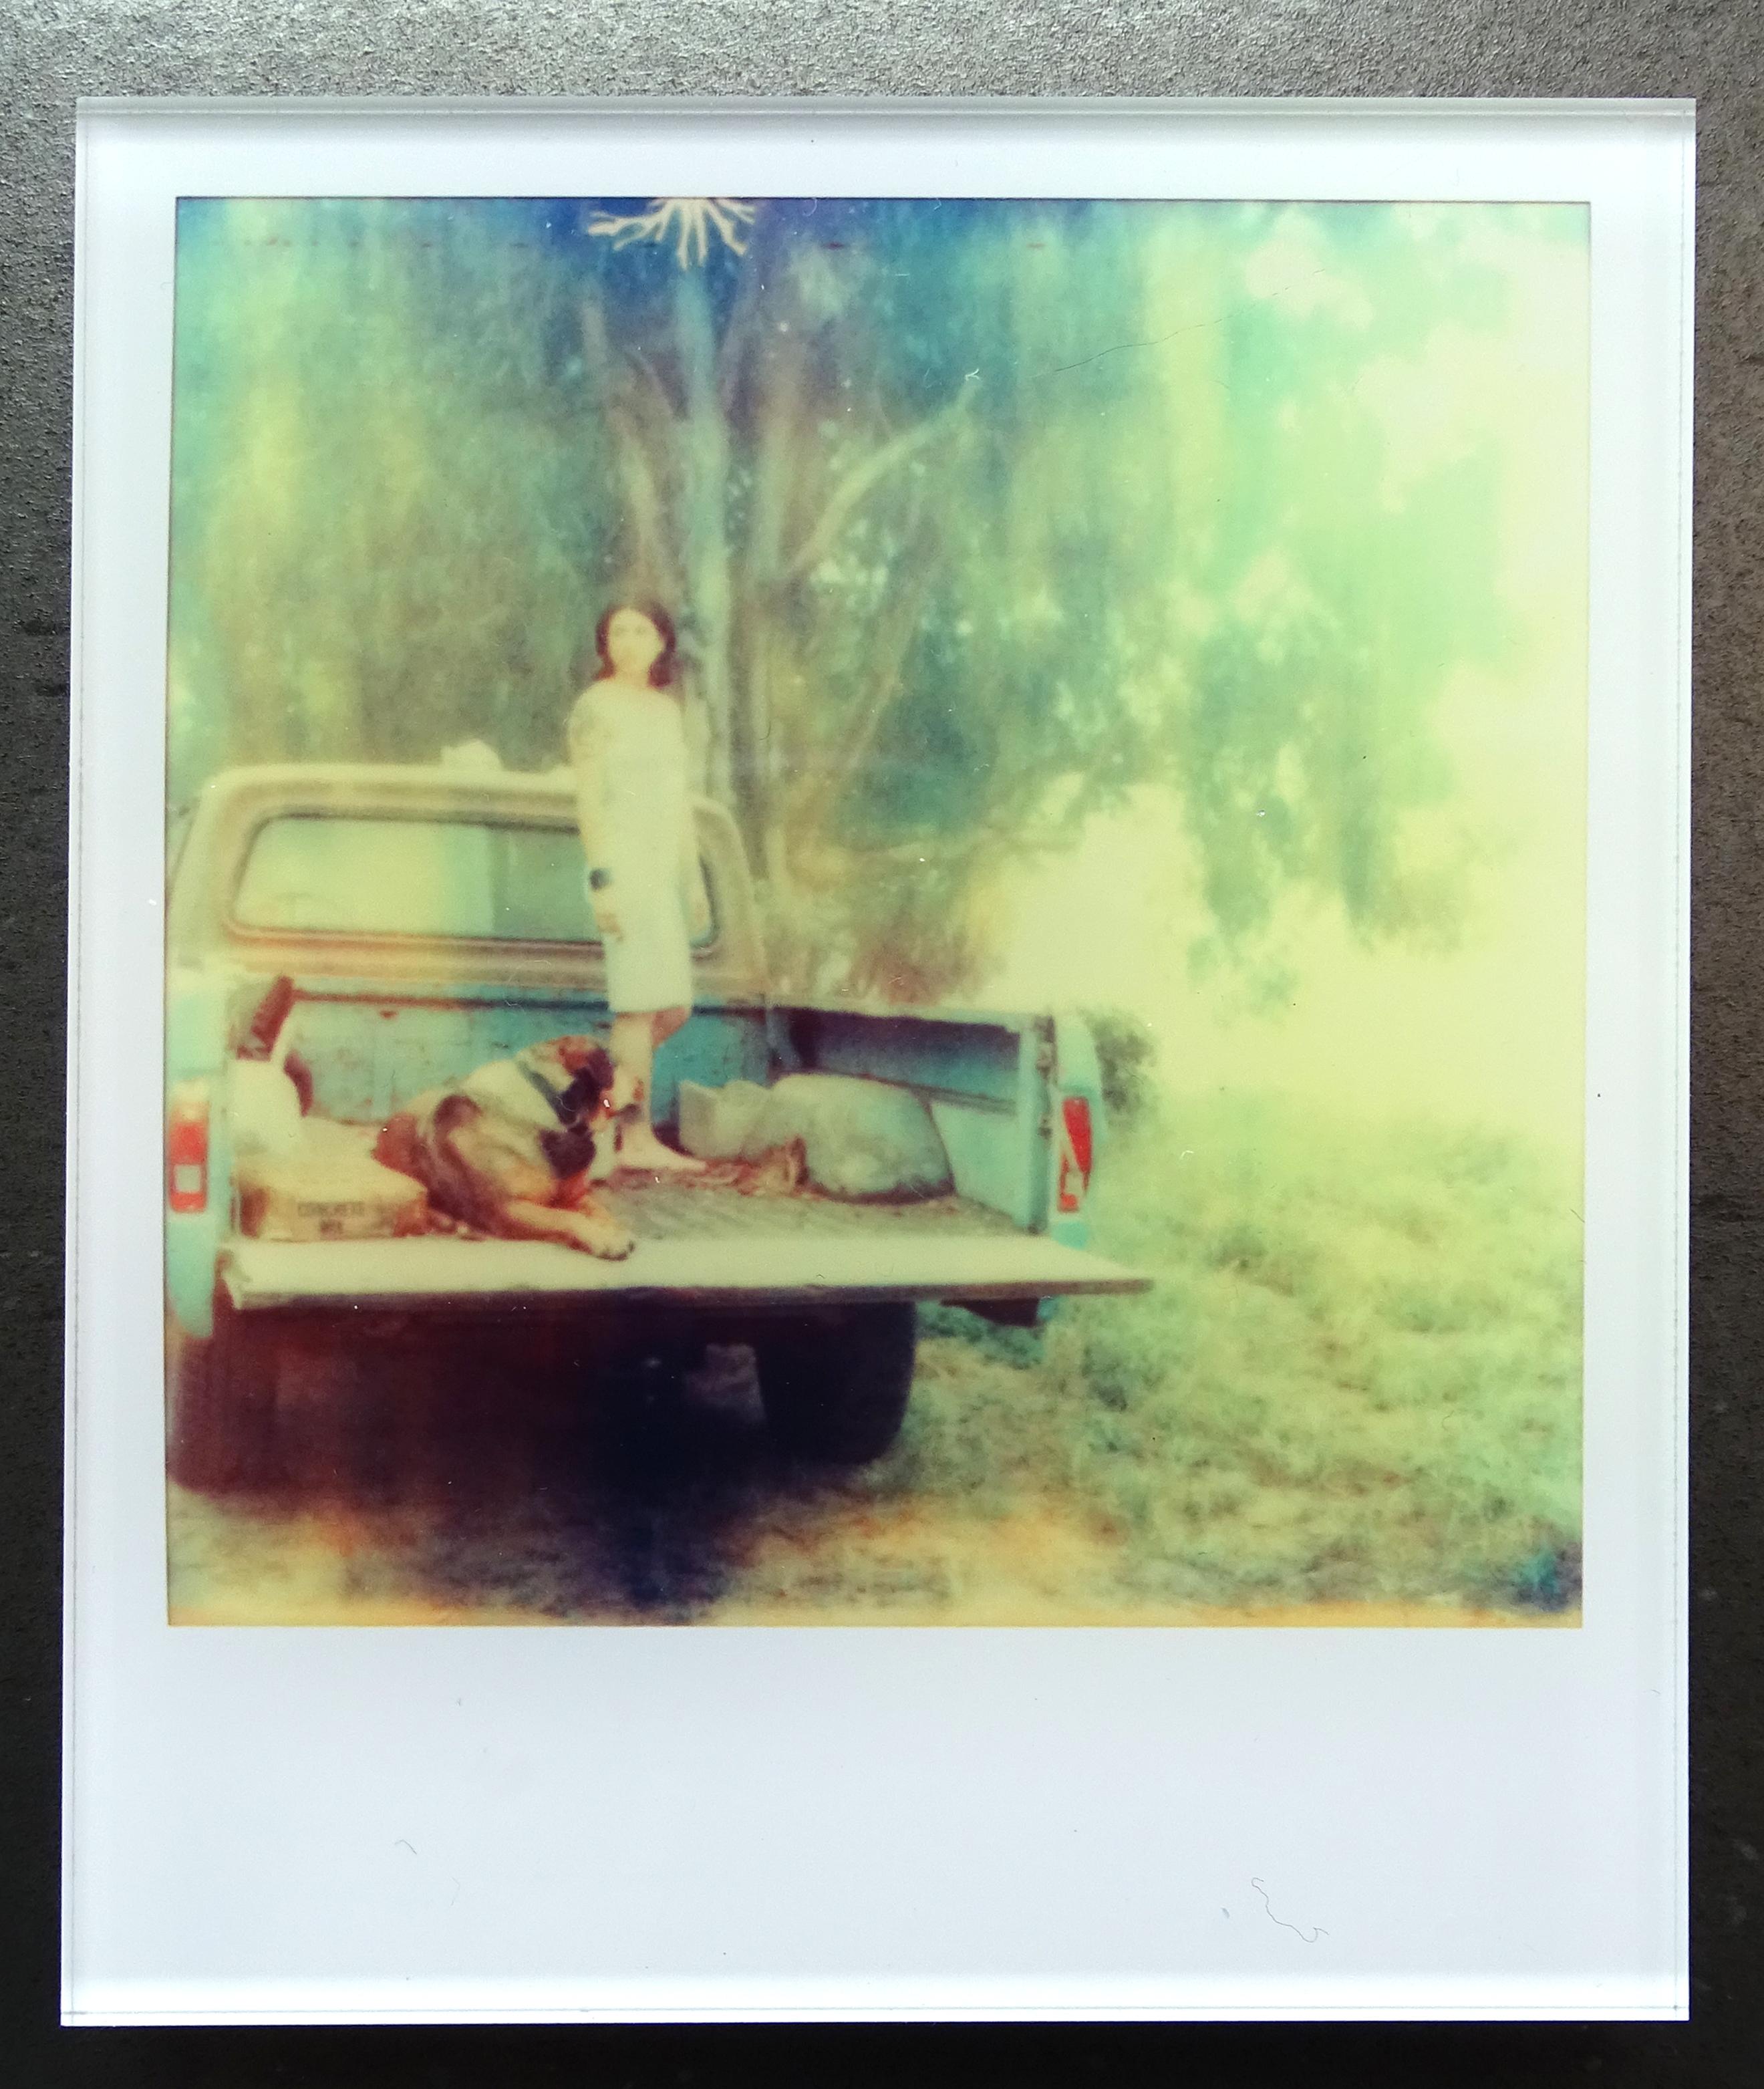 Stefanie Schneider Minis - Saigon (Stranger than Paradise) - based on a Polaroid 3